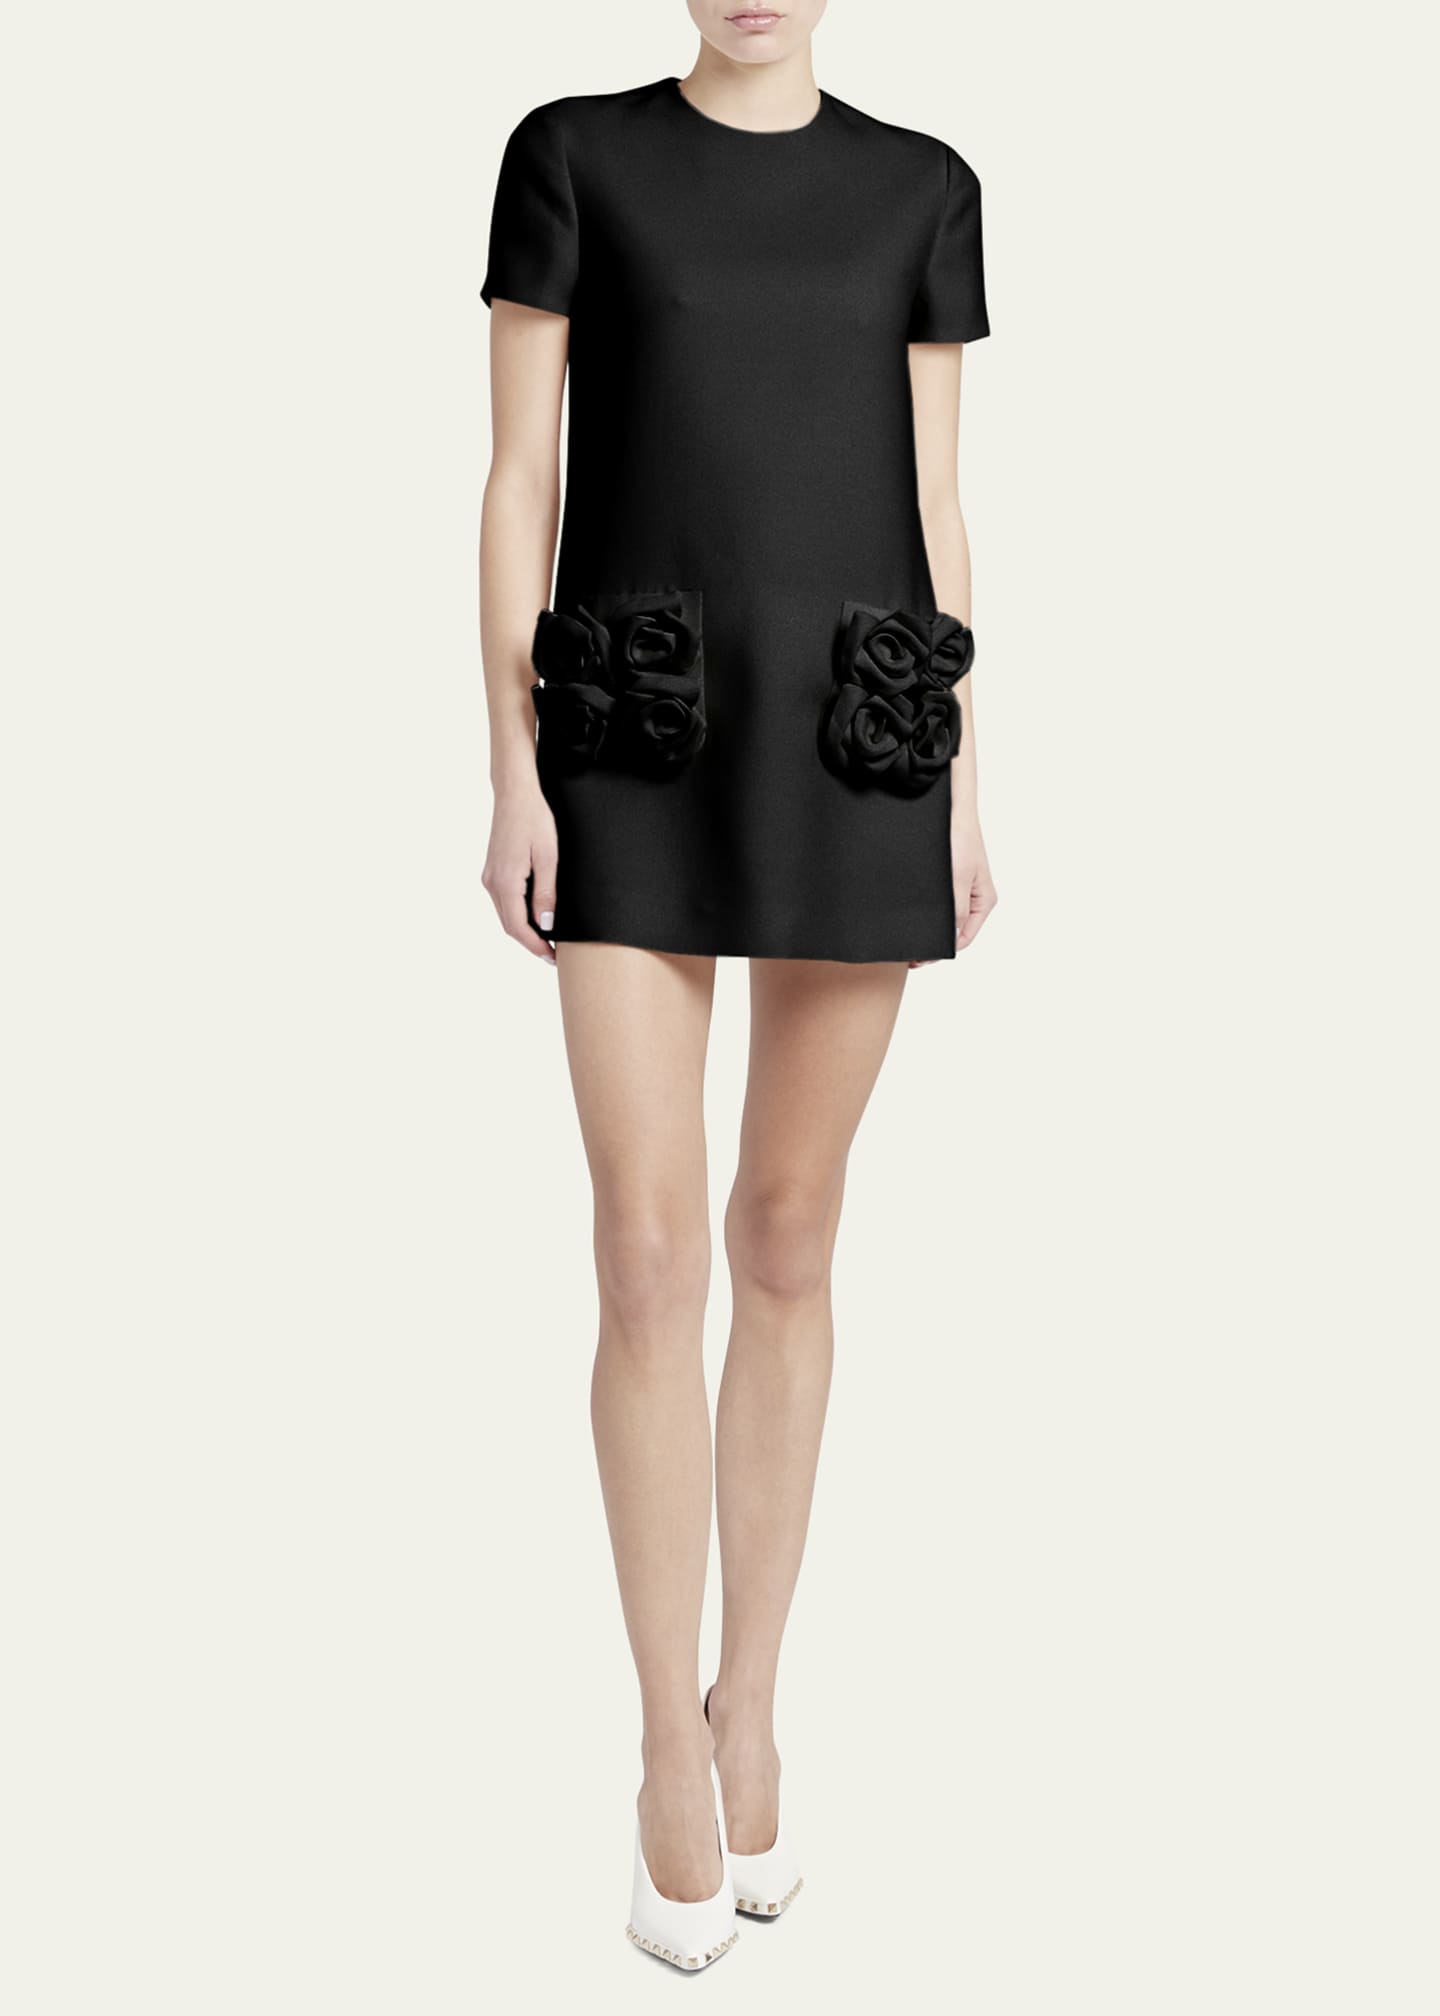 Valentino Garavani Crepe Couture Mini Dress with Floral Applique ...